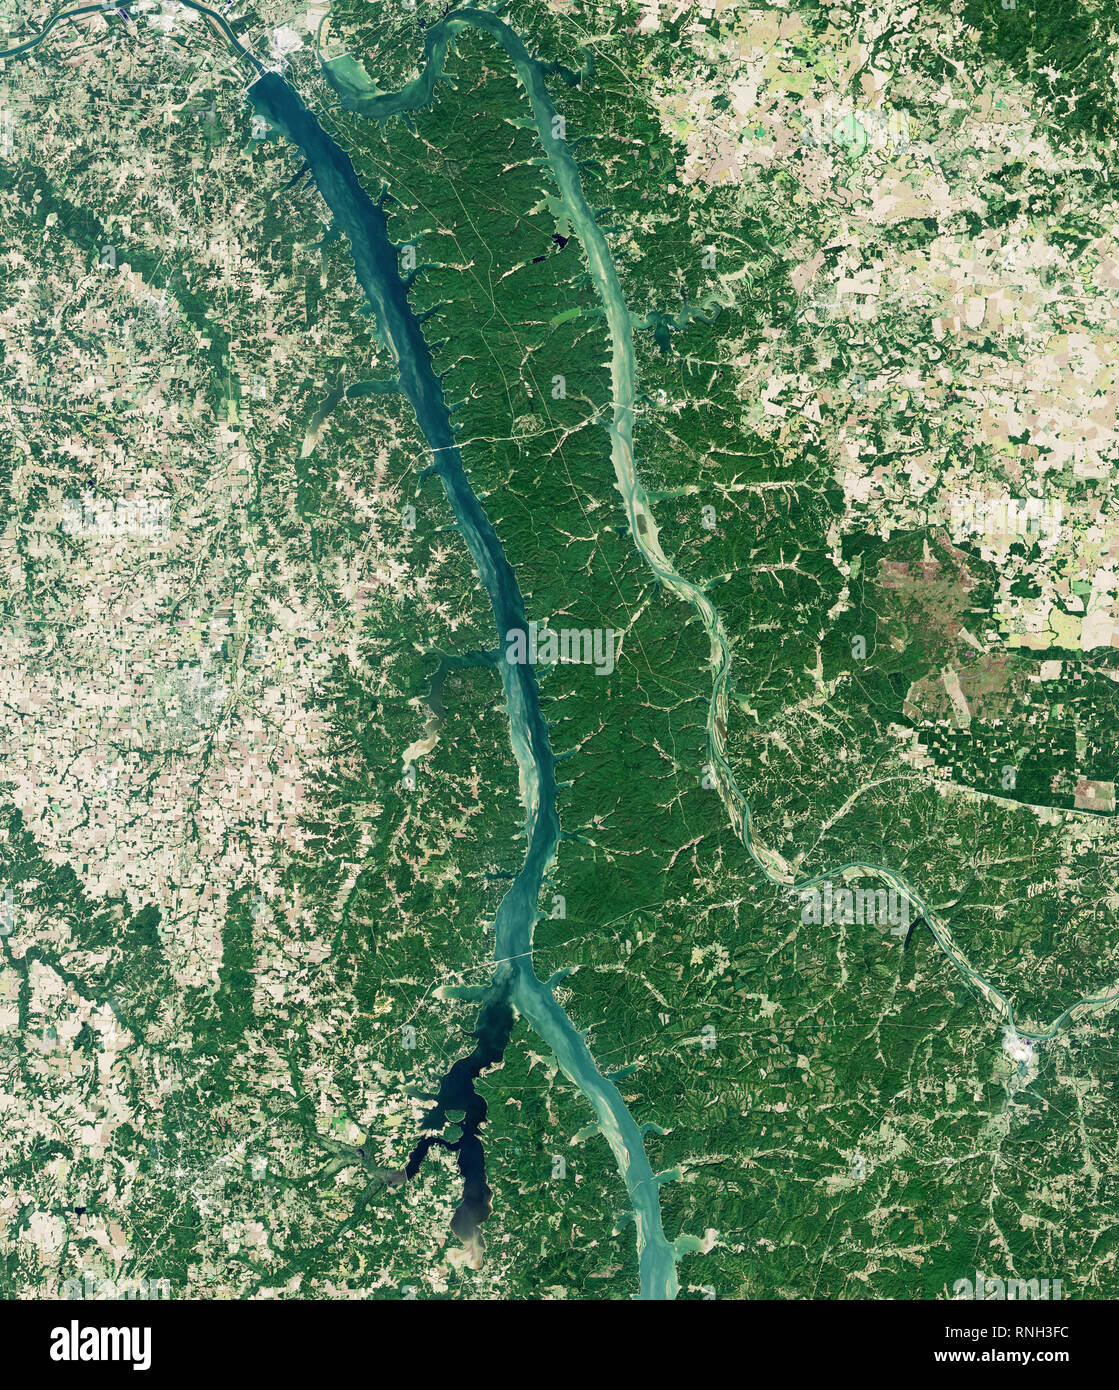 Seit mehr als hundert Jahren, die fruchtbare und bewaldeten Patch zwischen Tennessee und Cumberland Rivers war als das "Land zwischen den Riv verwiesen Stockfoto